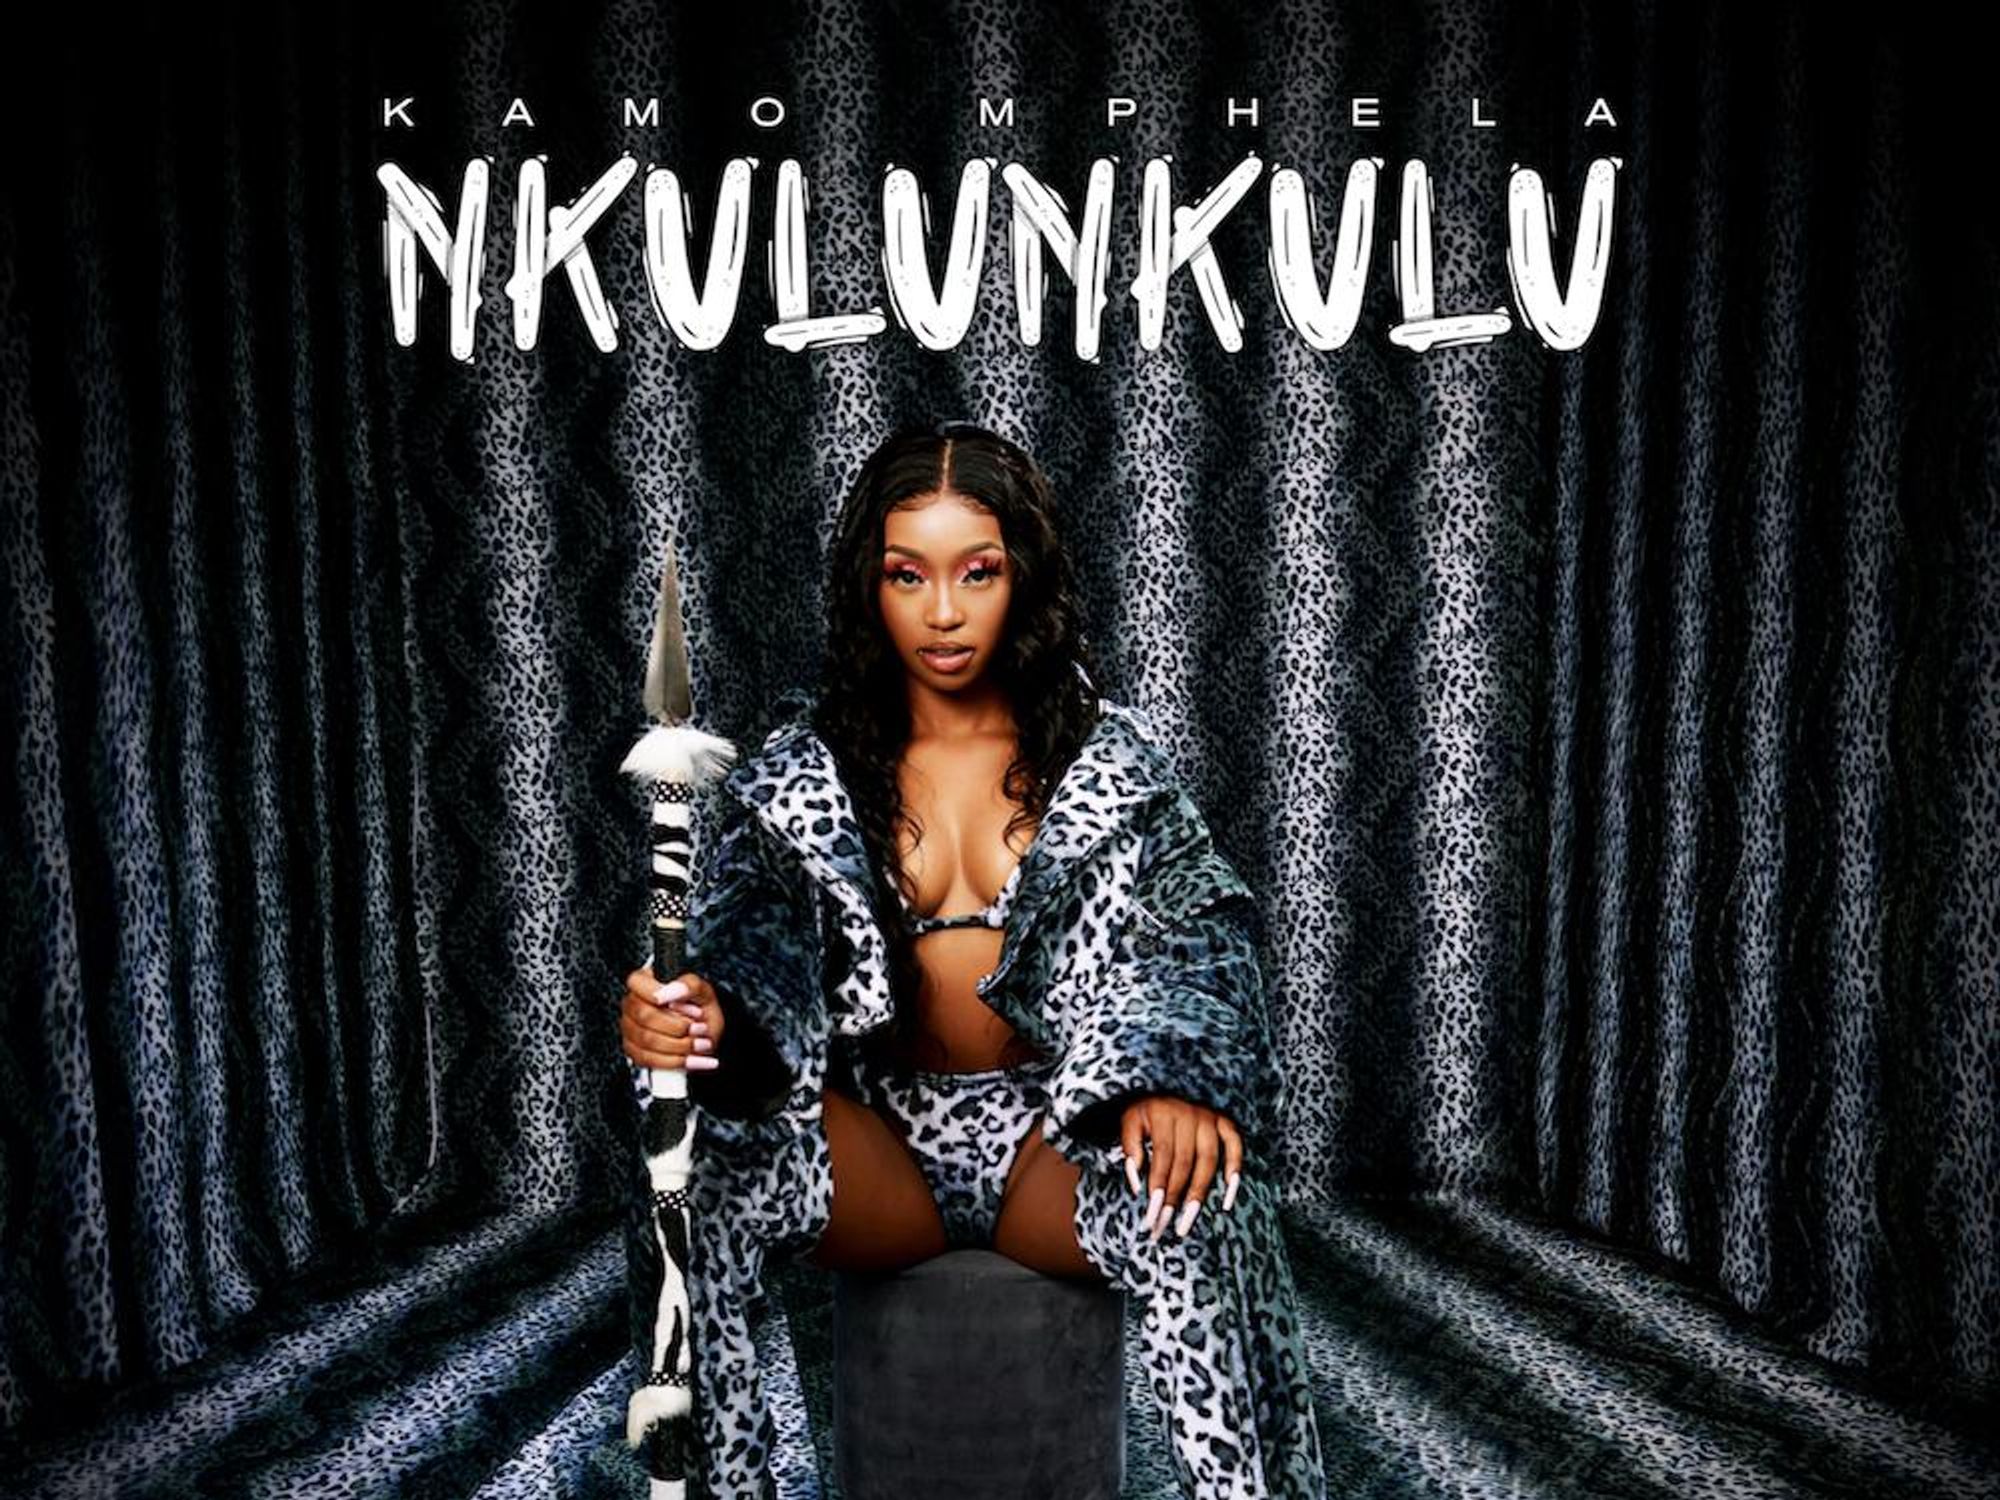 Kamo Mphela Drops New Single ‘Nkulunkulu’ Ahead of Upcoming EP